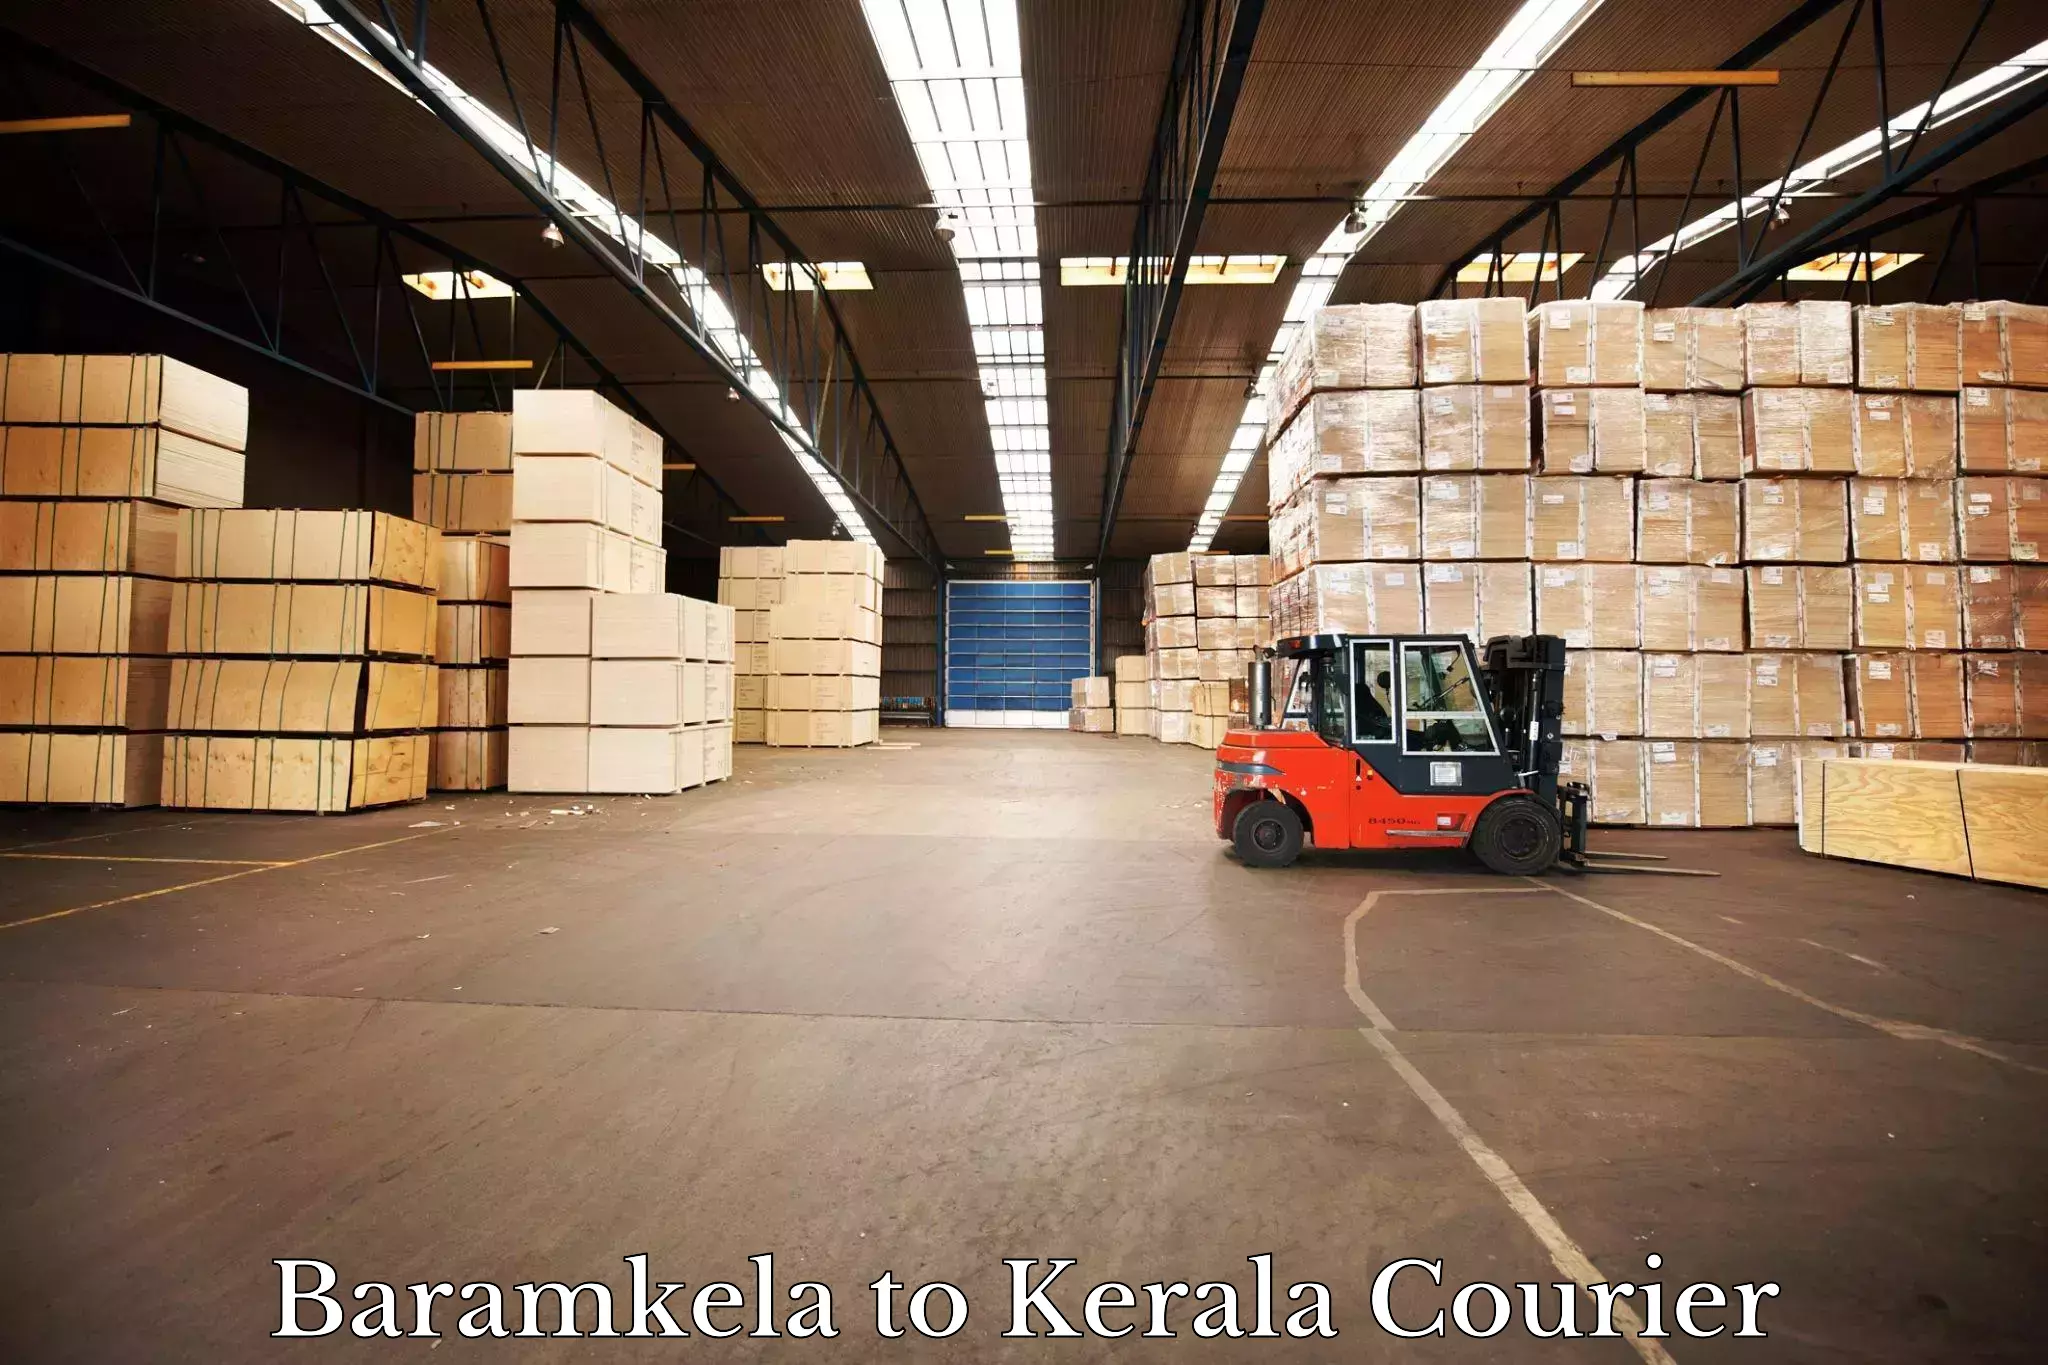 Courier service partnerships Baramkela to Kerala